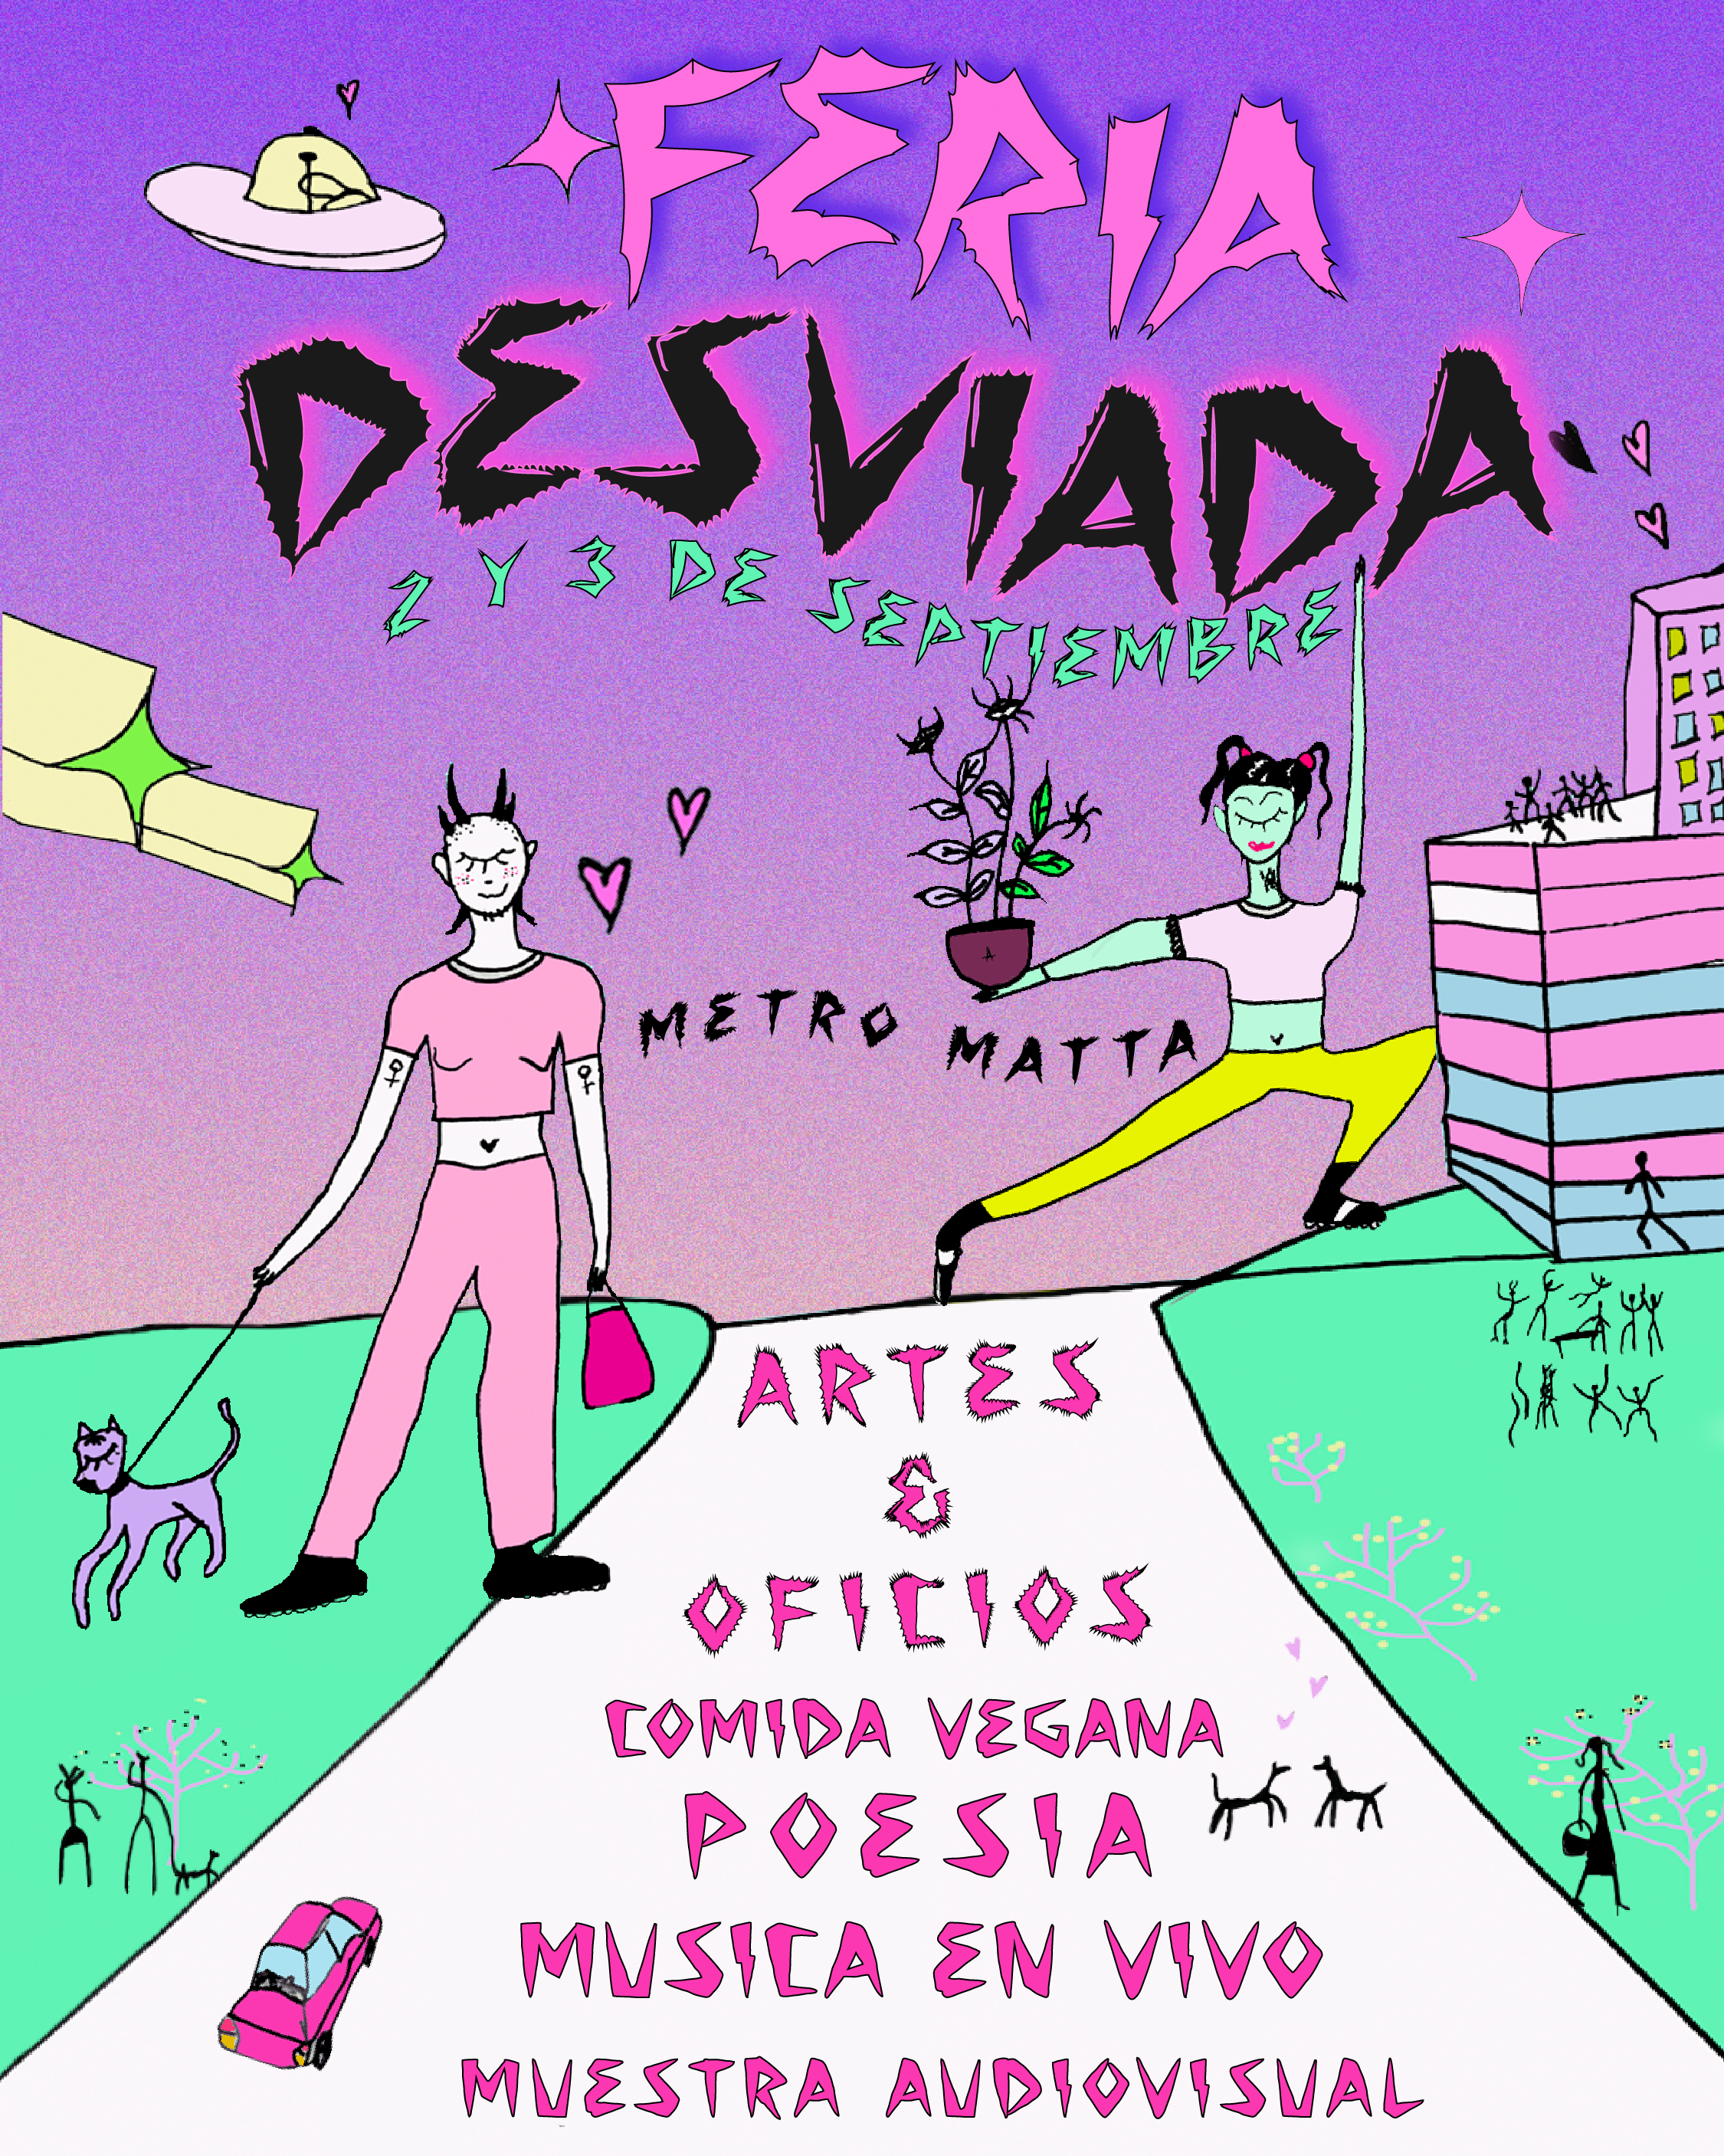 Afiche feria desviada. 2 y 3 de septiembre. Metro Matta, Artes y oficios, comida vegana, poesía música en vivo, muestra audiovisual.